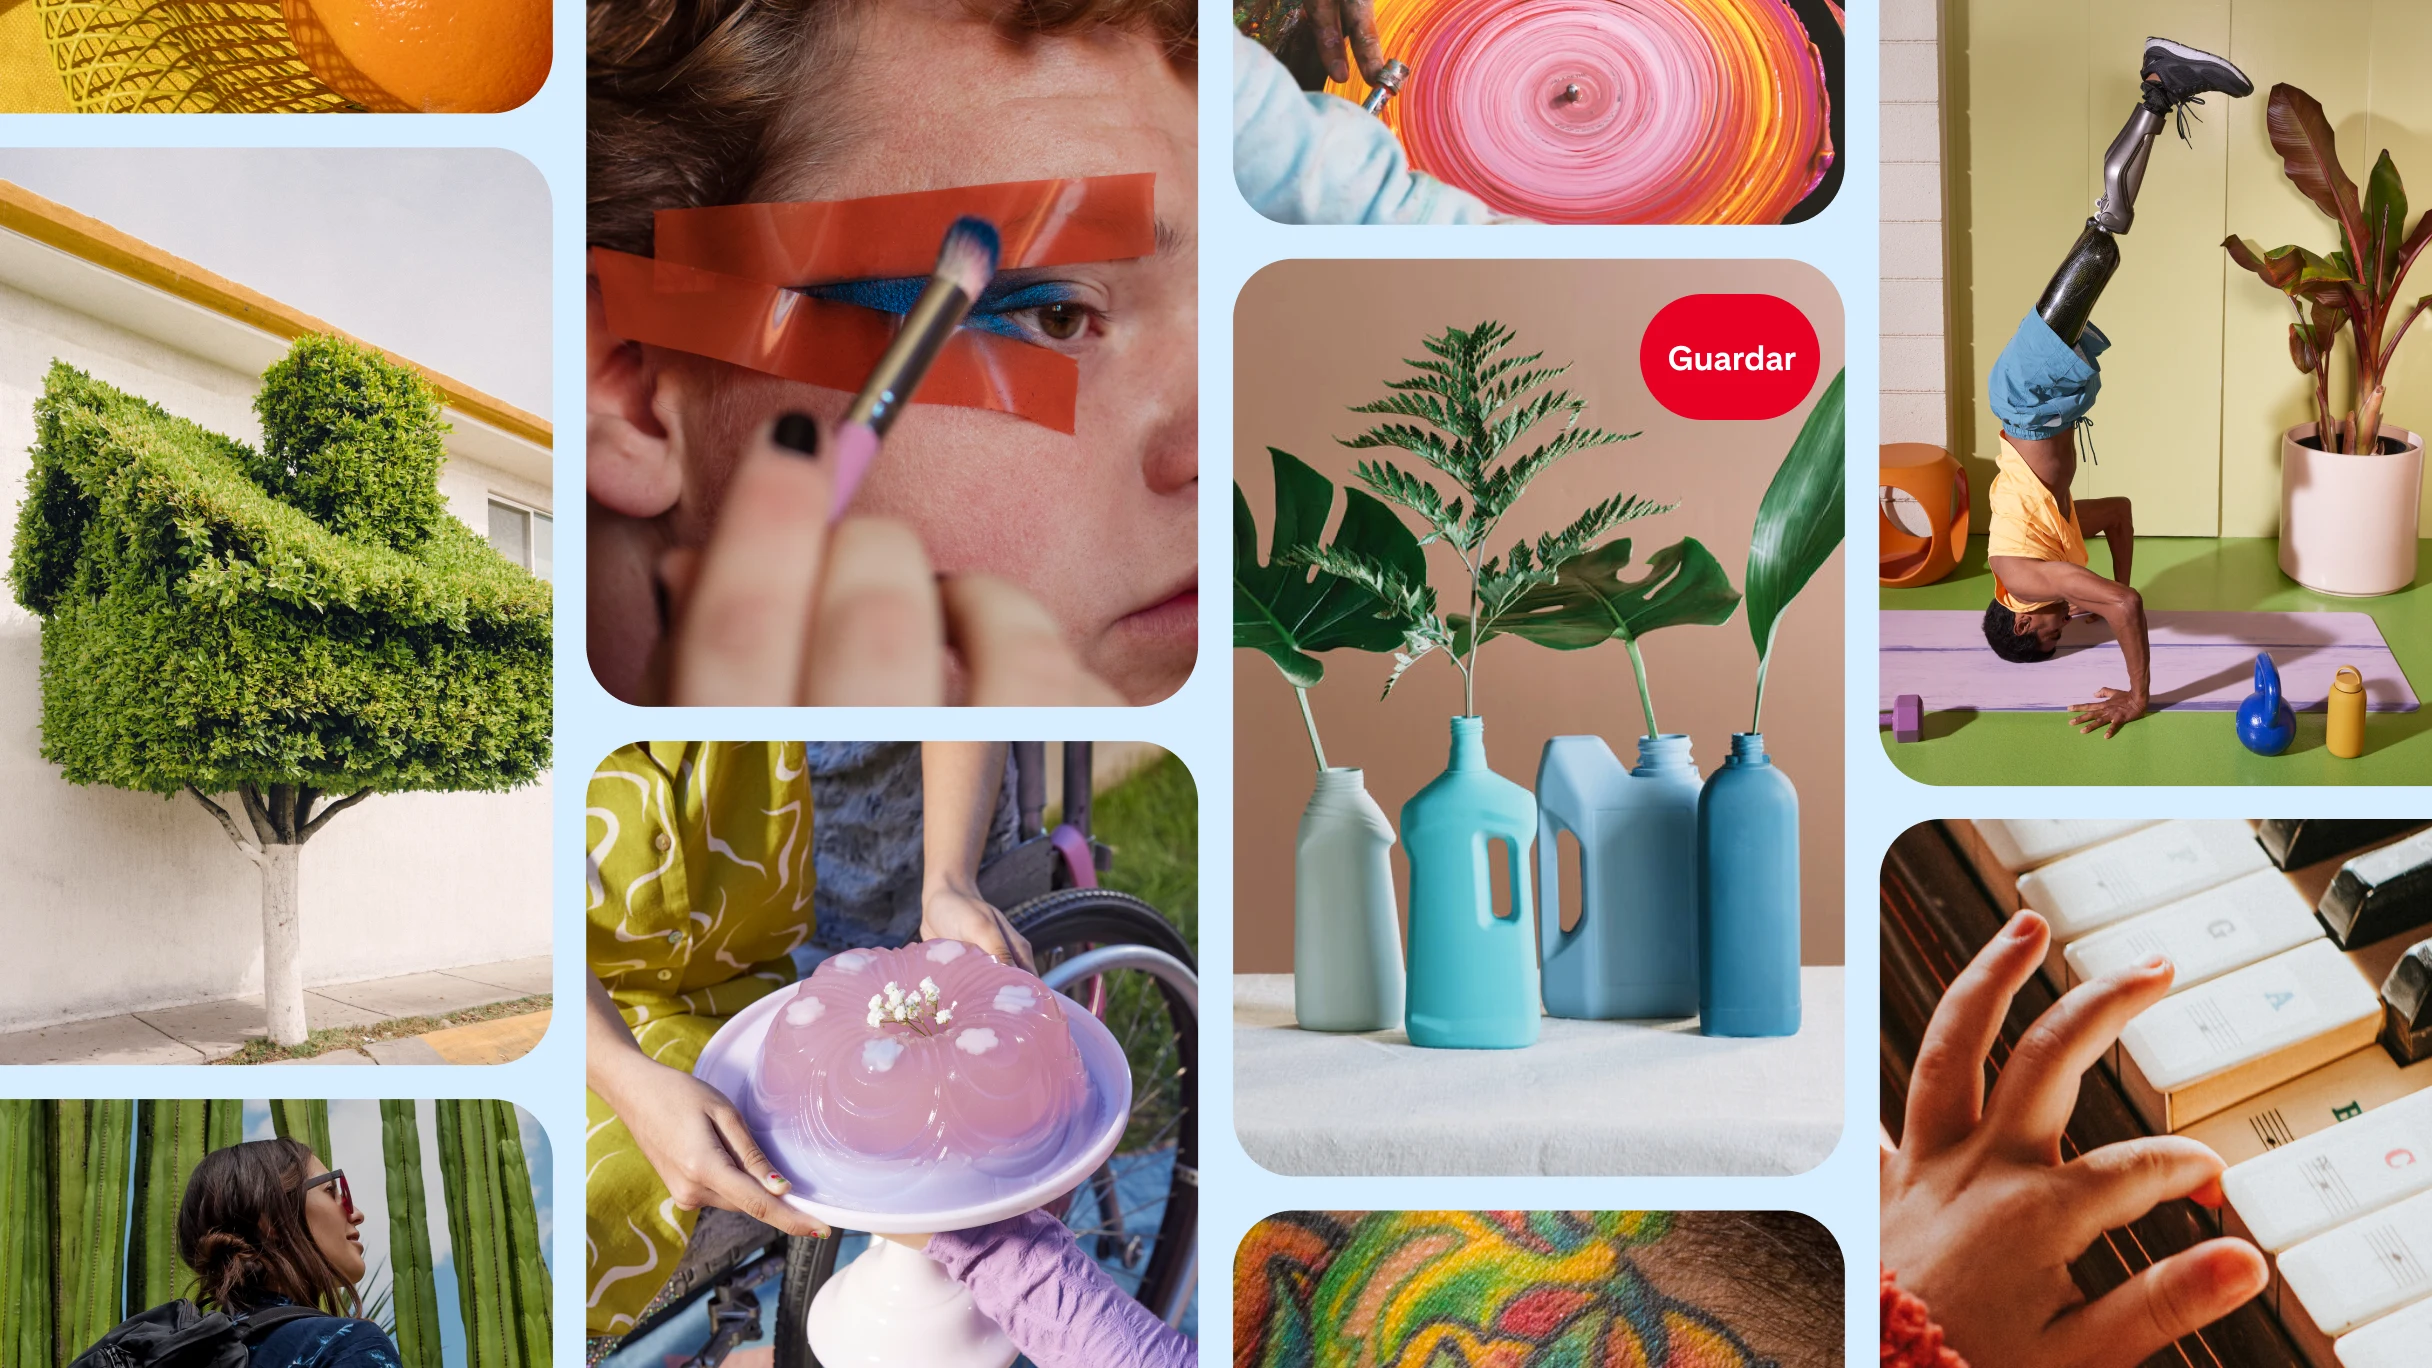  Un feed de inicio de Pinterest que muestra a una persona maquillándose, plantas verdes en jarrones, una persona con prótesis en las piernas parándose de cabeza y más.